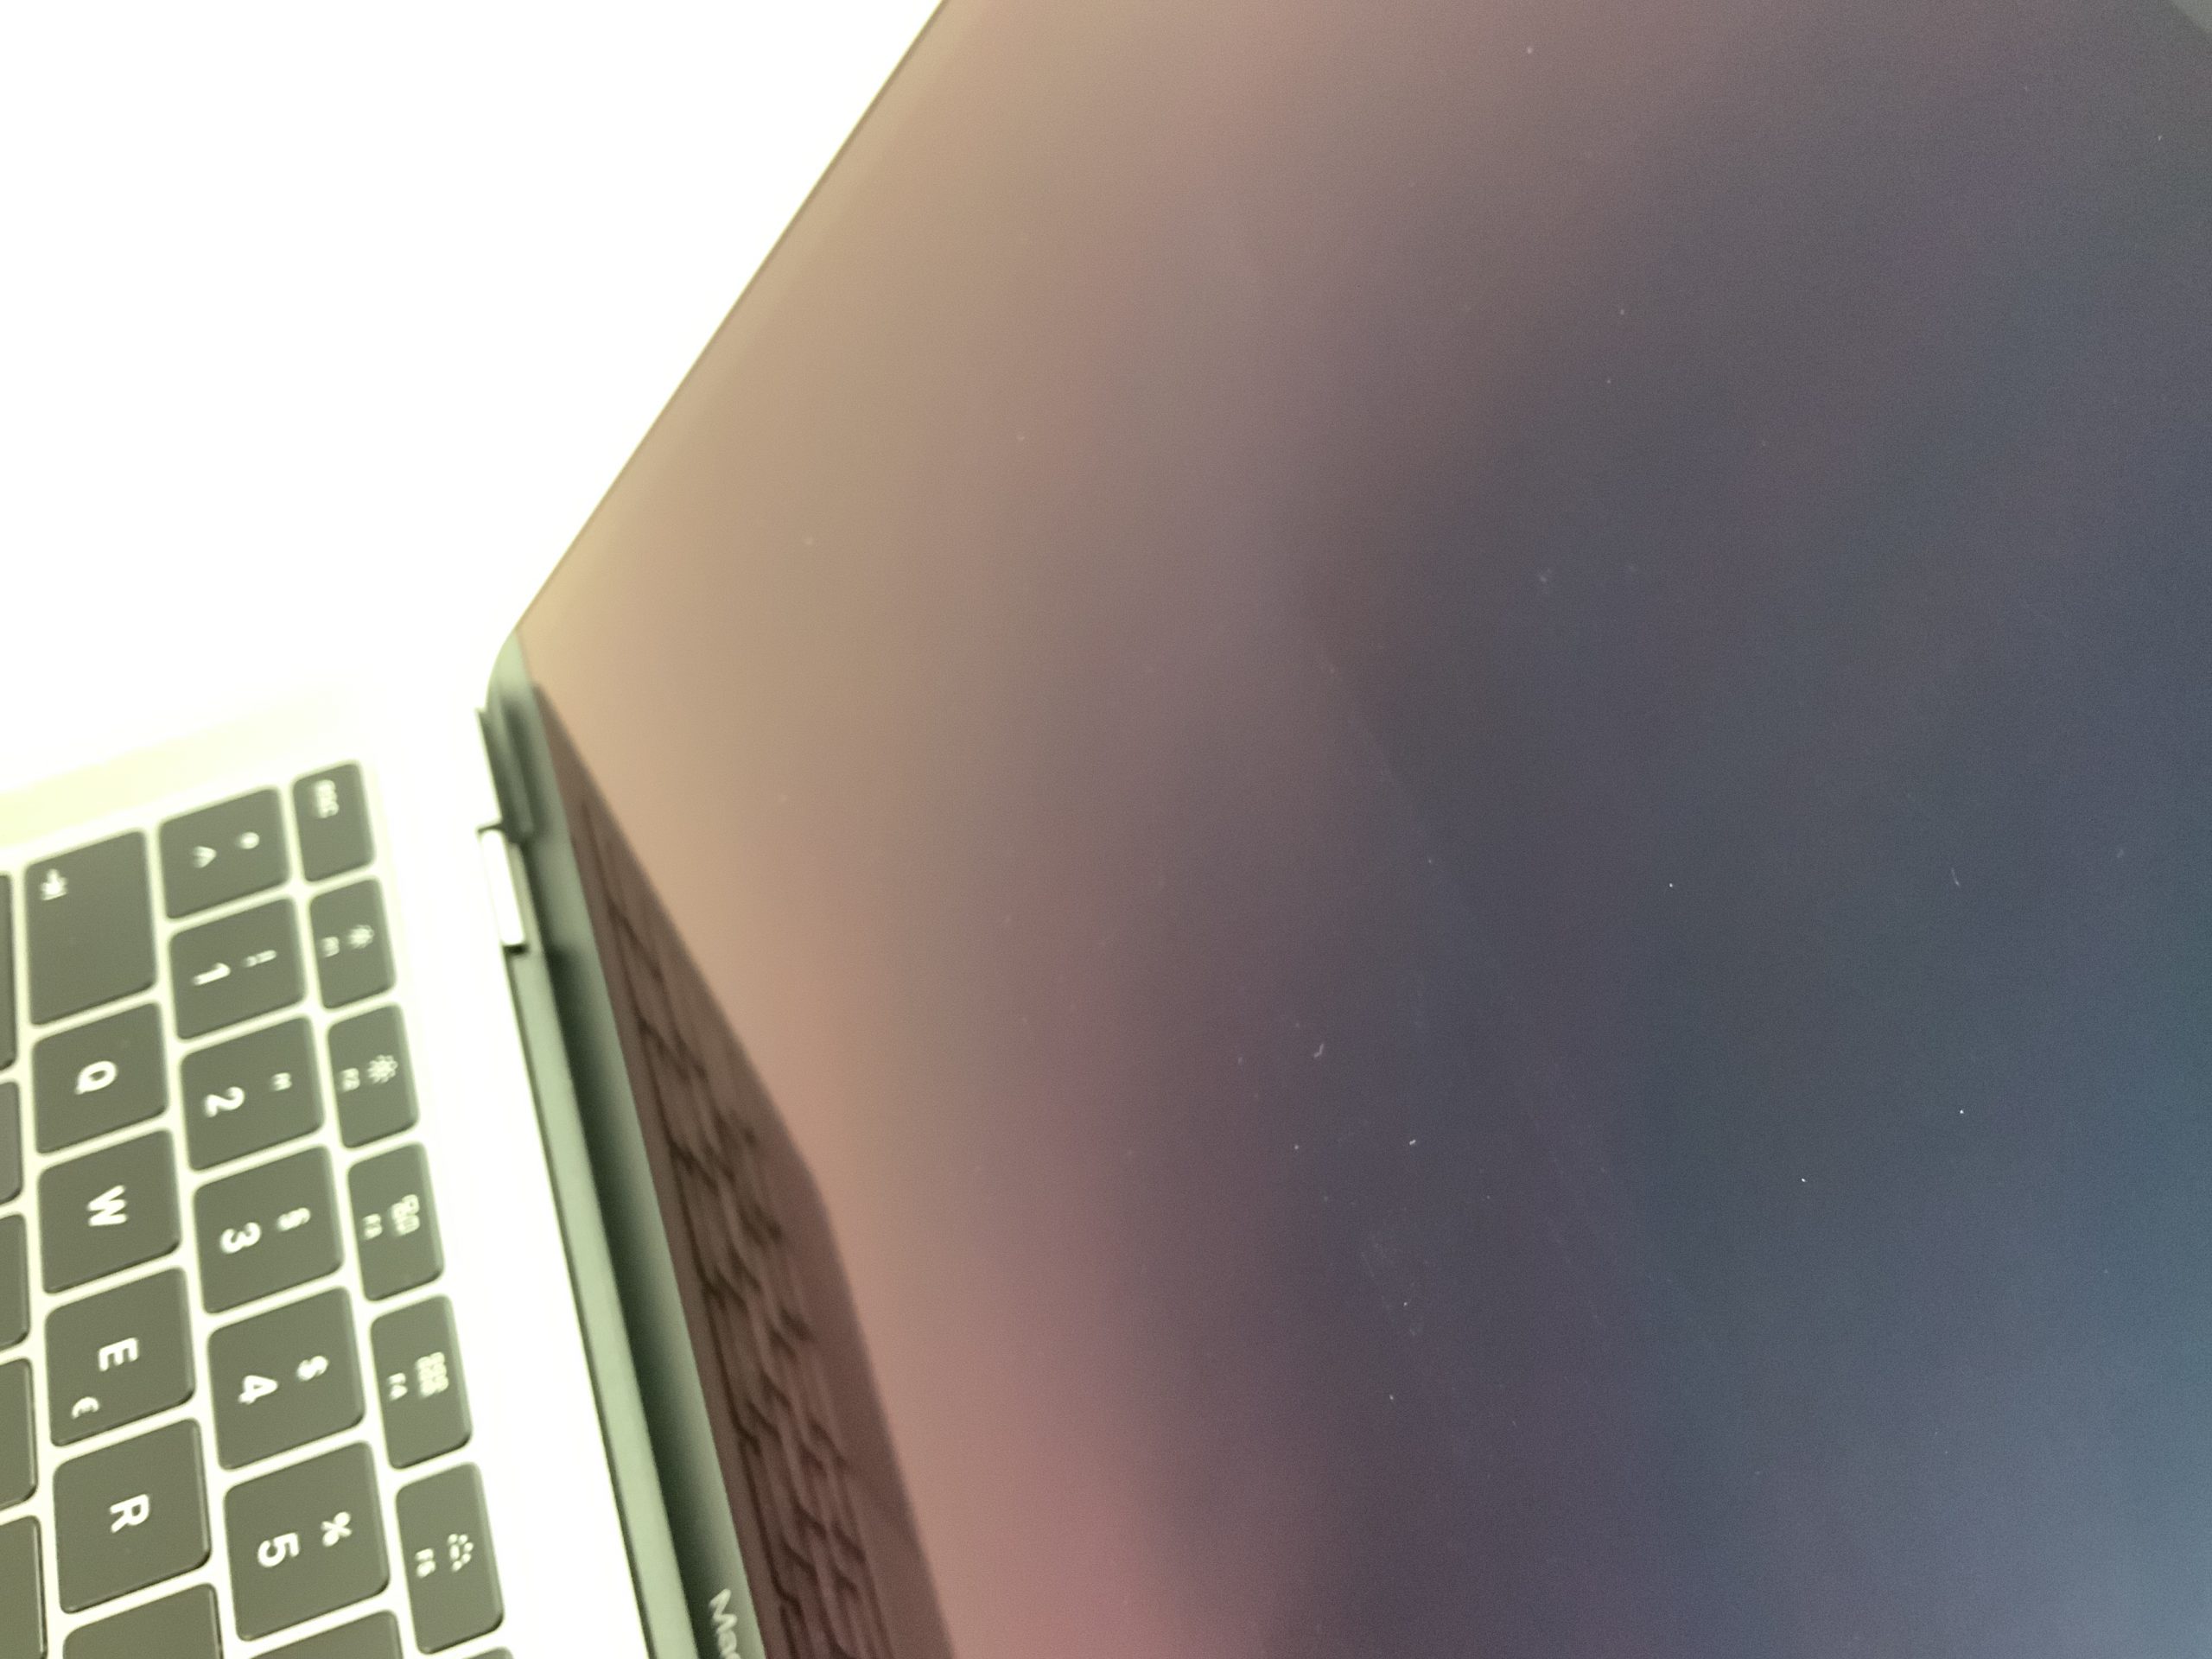 MacBook Air 13" Mid 2019 (Intel Core i5 1.6 GHz 8 GB RAM 512 GB SSD), Space Gray, Intel Core i5 1.6 GHz, 8 GB RAM, 512 GB SSD, immagine 2